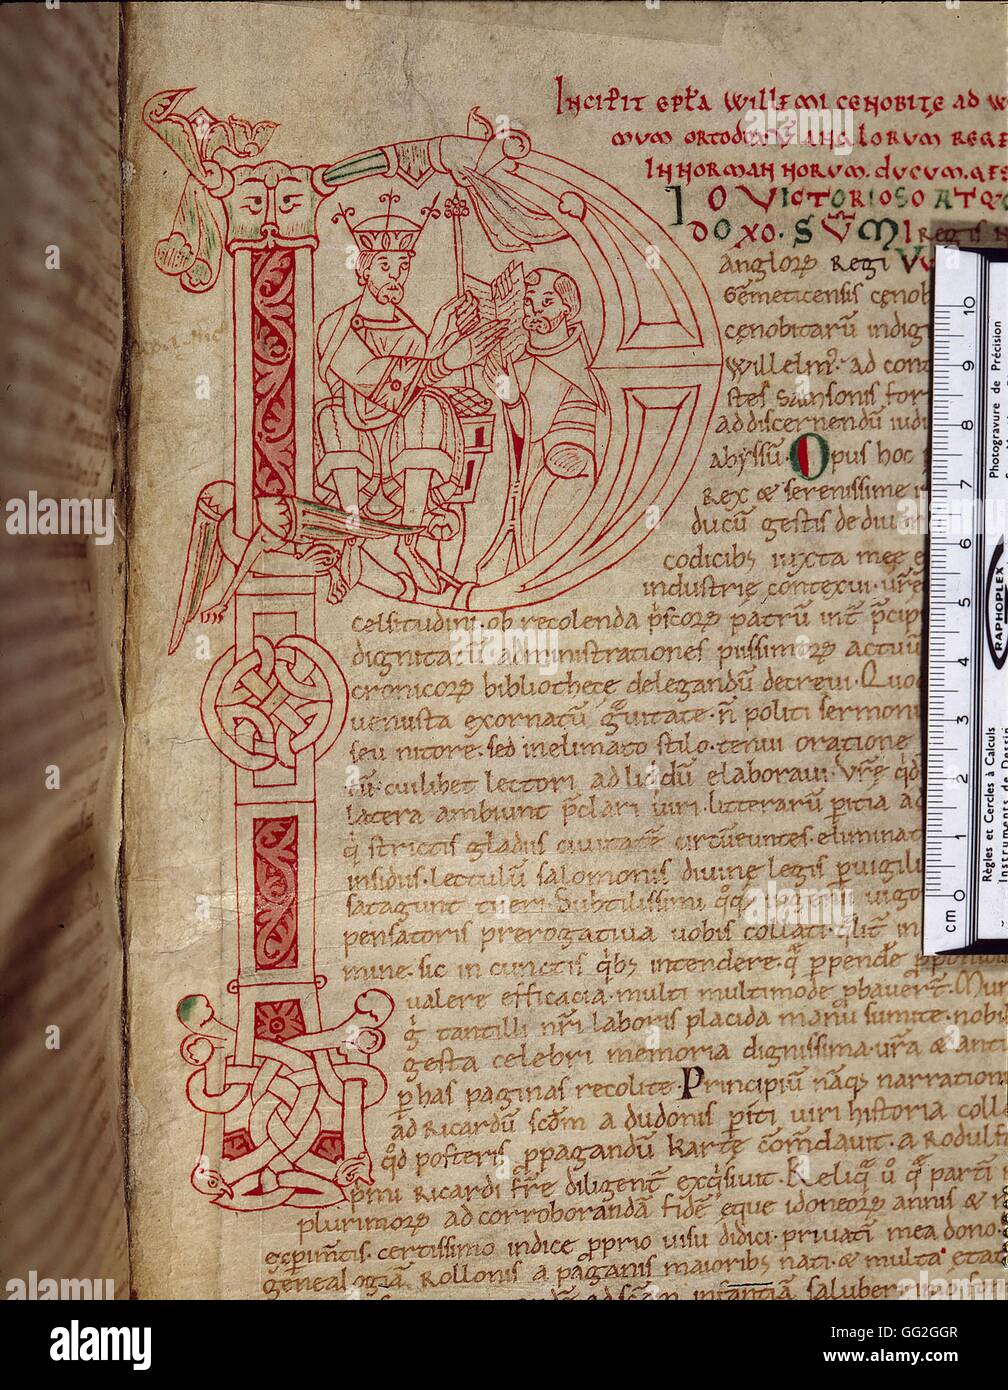 William von Jumièges bietet seine Arbeiten "Gesta Normannorum Ducum" Wilhelm den Eroberer (im ersten ' P'). c.1070 Handschrift Rouen, Bibliothèque Municipale Stockfoto